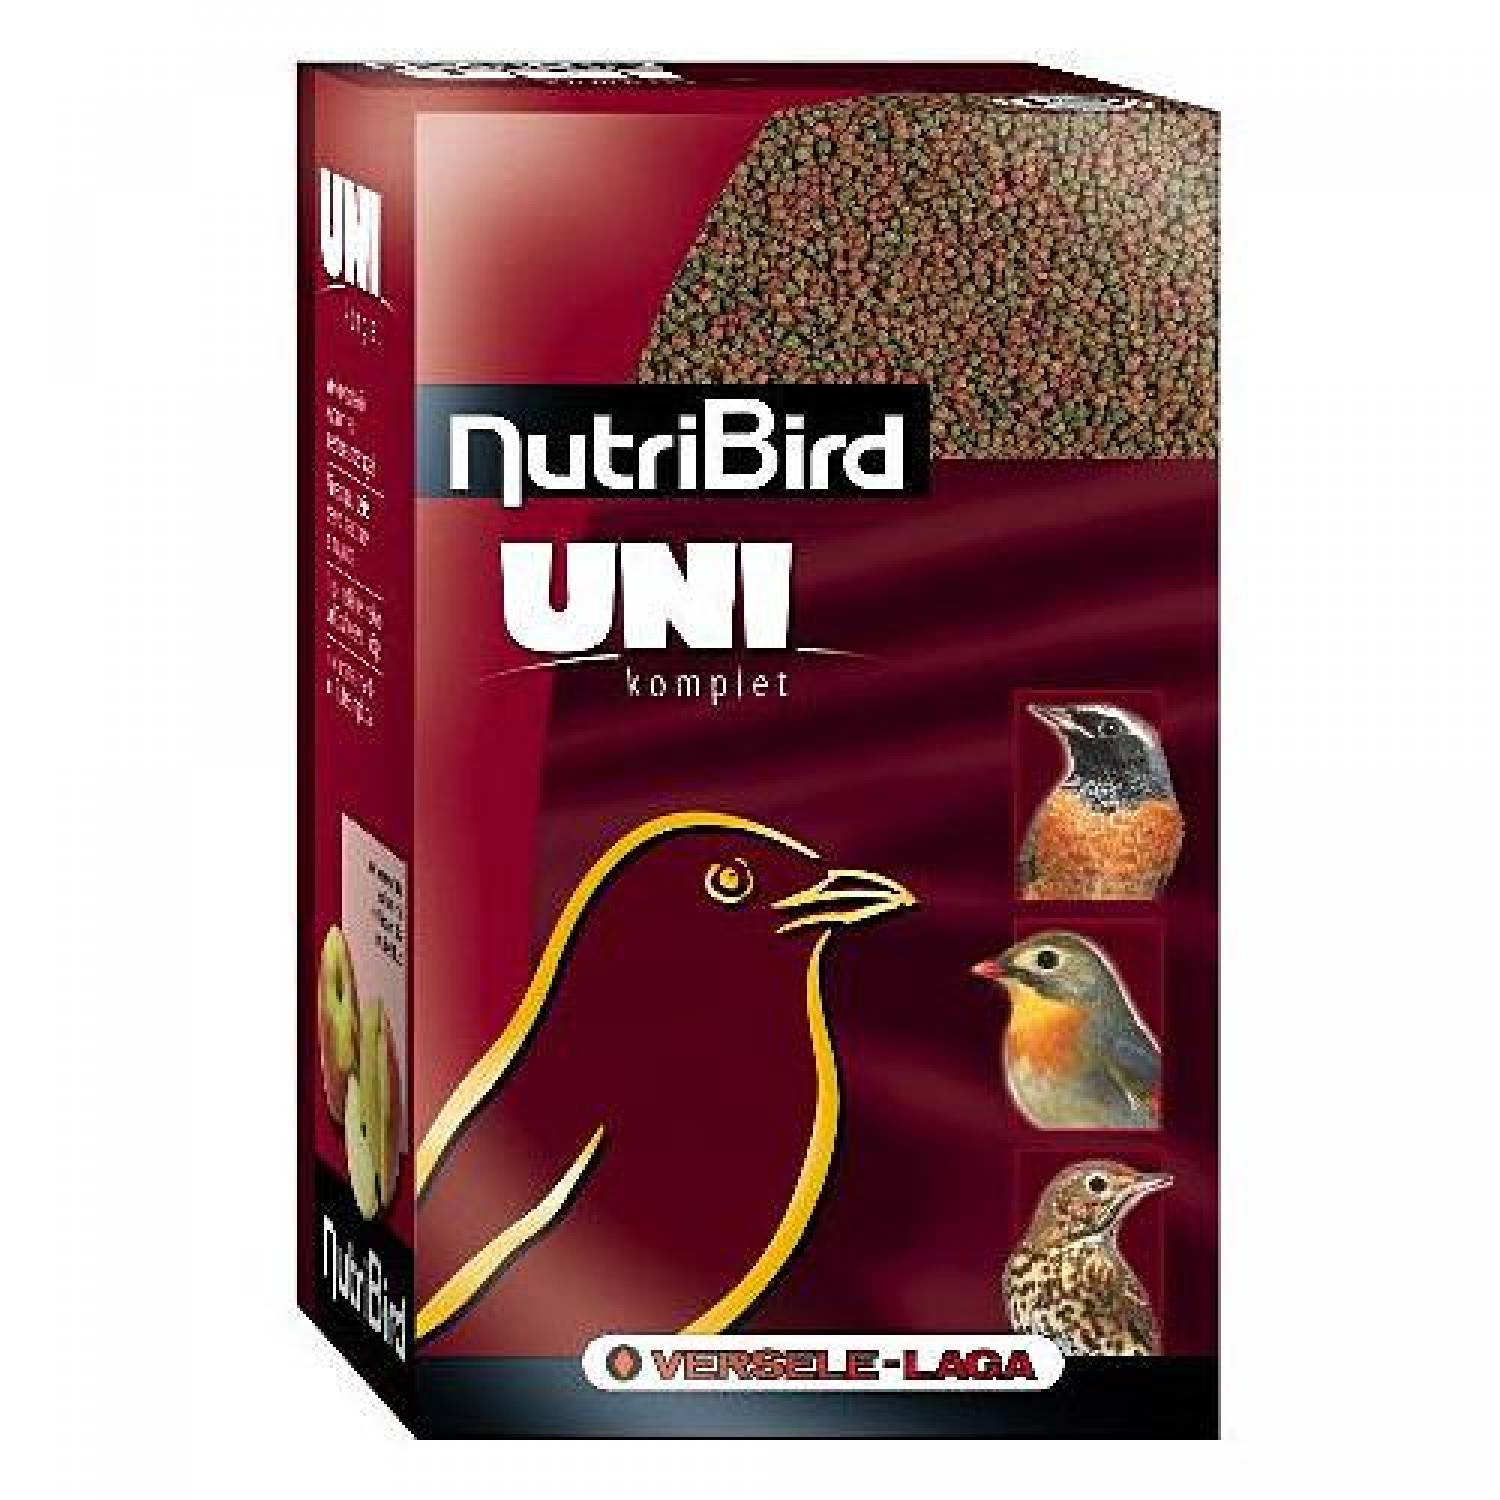  NutriBird Uni Komplet 1 Kg Vogelartikelenwebshop nl 